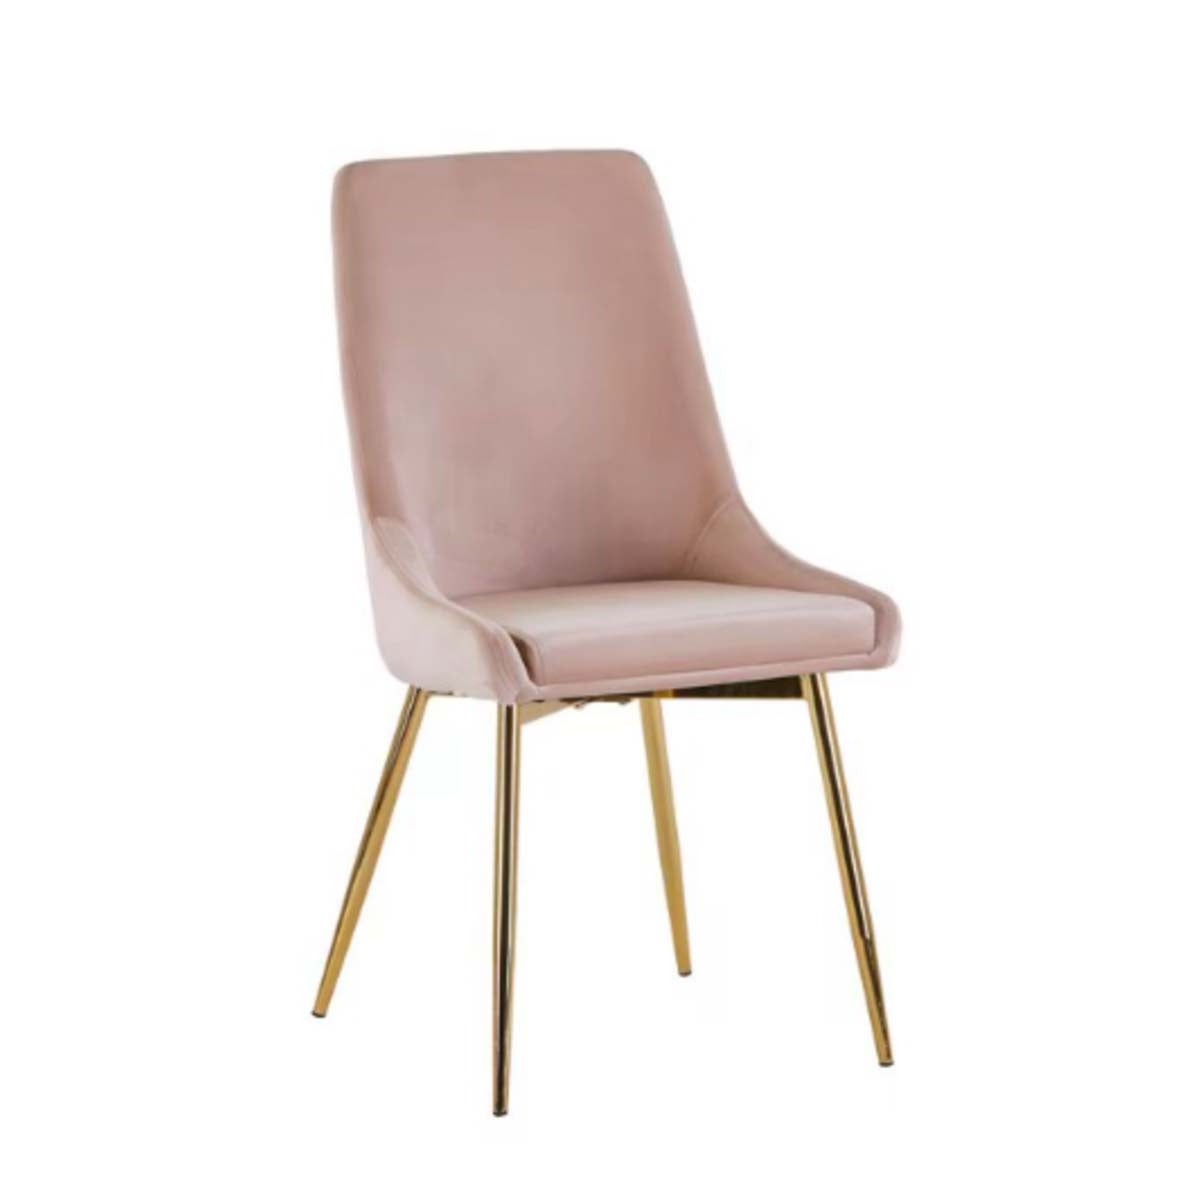 Velvet Dining Chair - Golden Chromed Legs